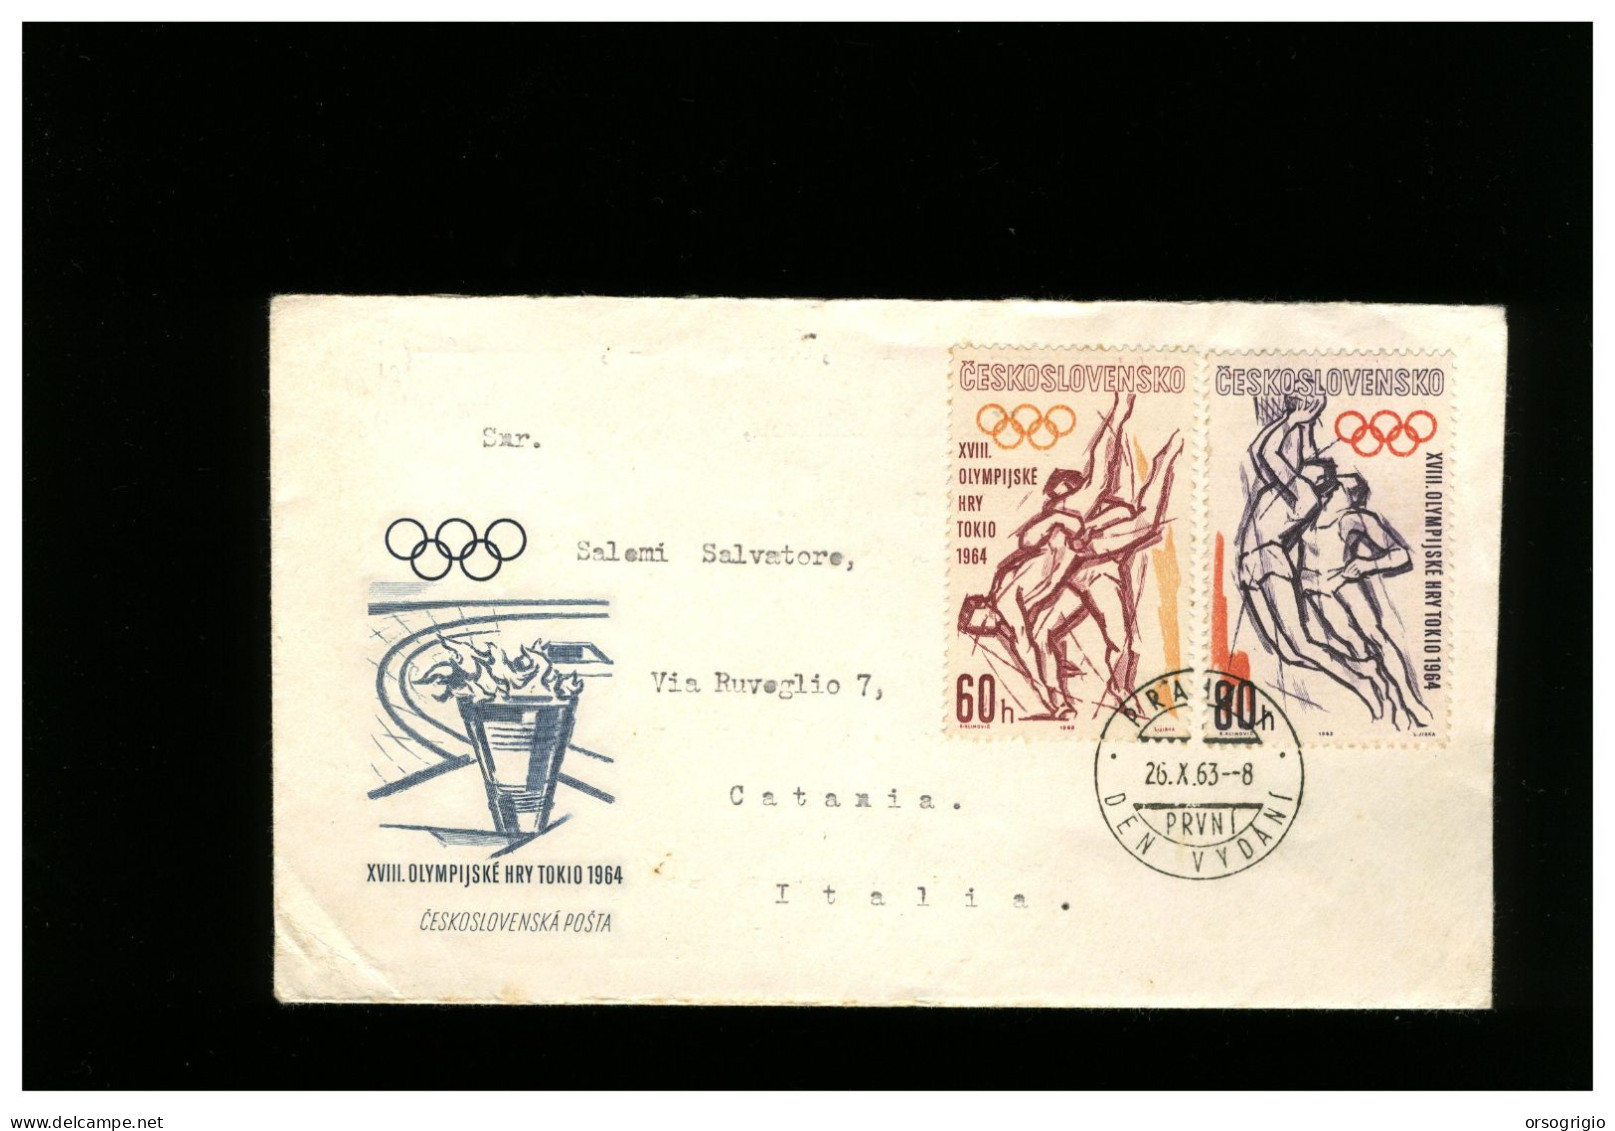 CECOSLOVACCHIA - CESKOSLOVENSKO - FDC 1963 -   OLIMPIADE TOKYO 1964 - FDC